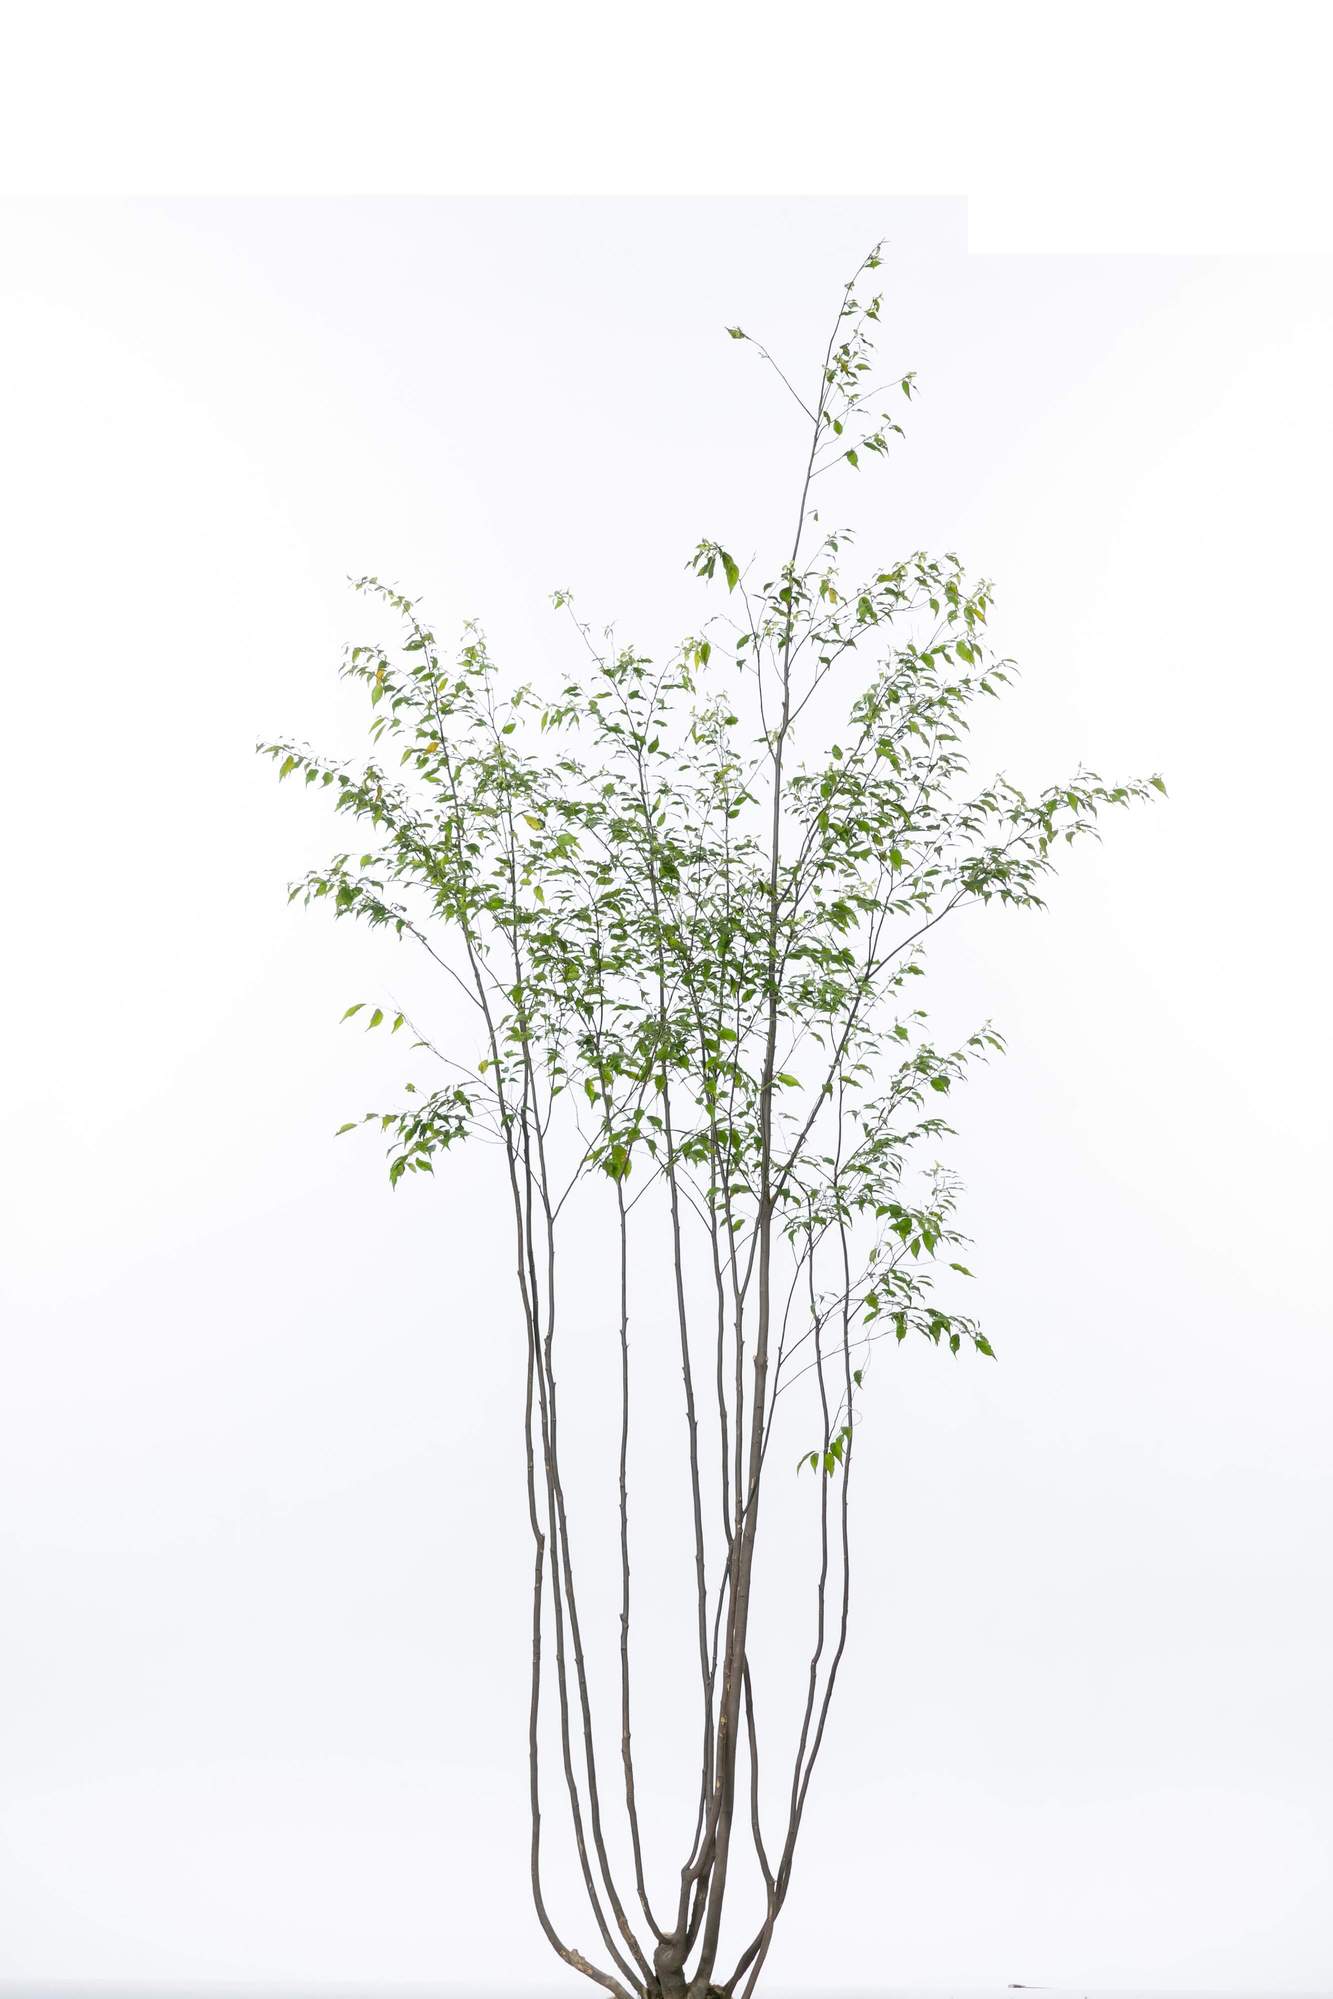 ハイノキ 灰の木 常緑高木 植栽 庭木 シンボルツリー